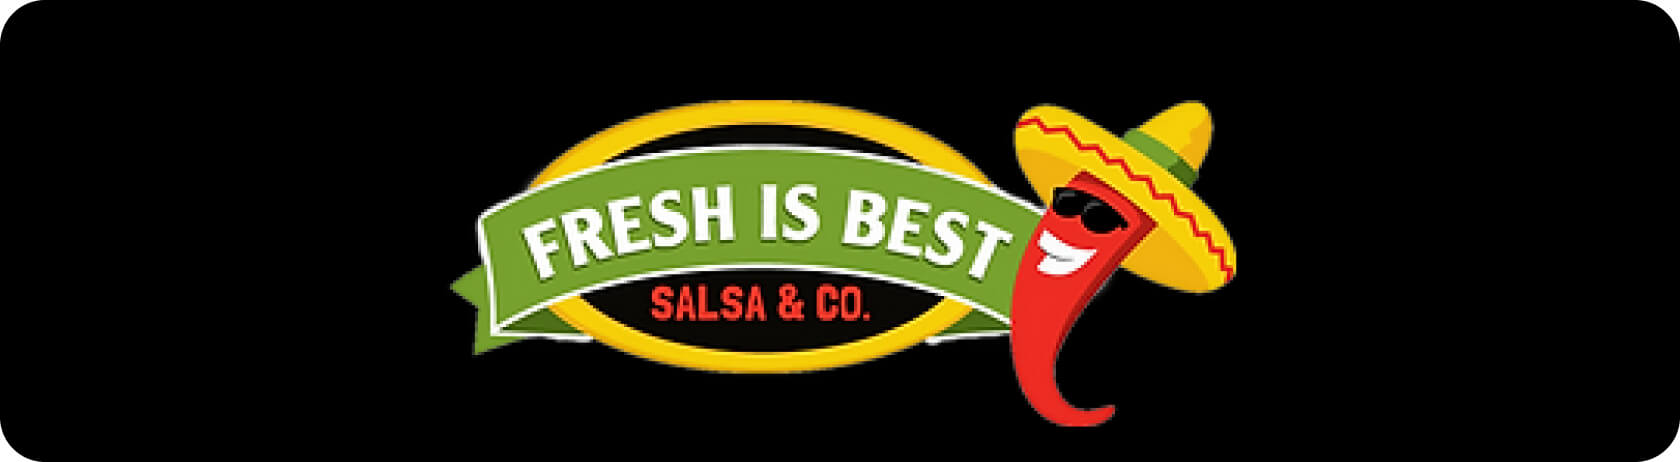 Logo Fresh Is Best Salsa & Co. avec rond de sac noir